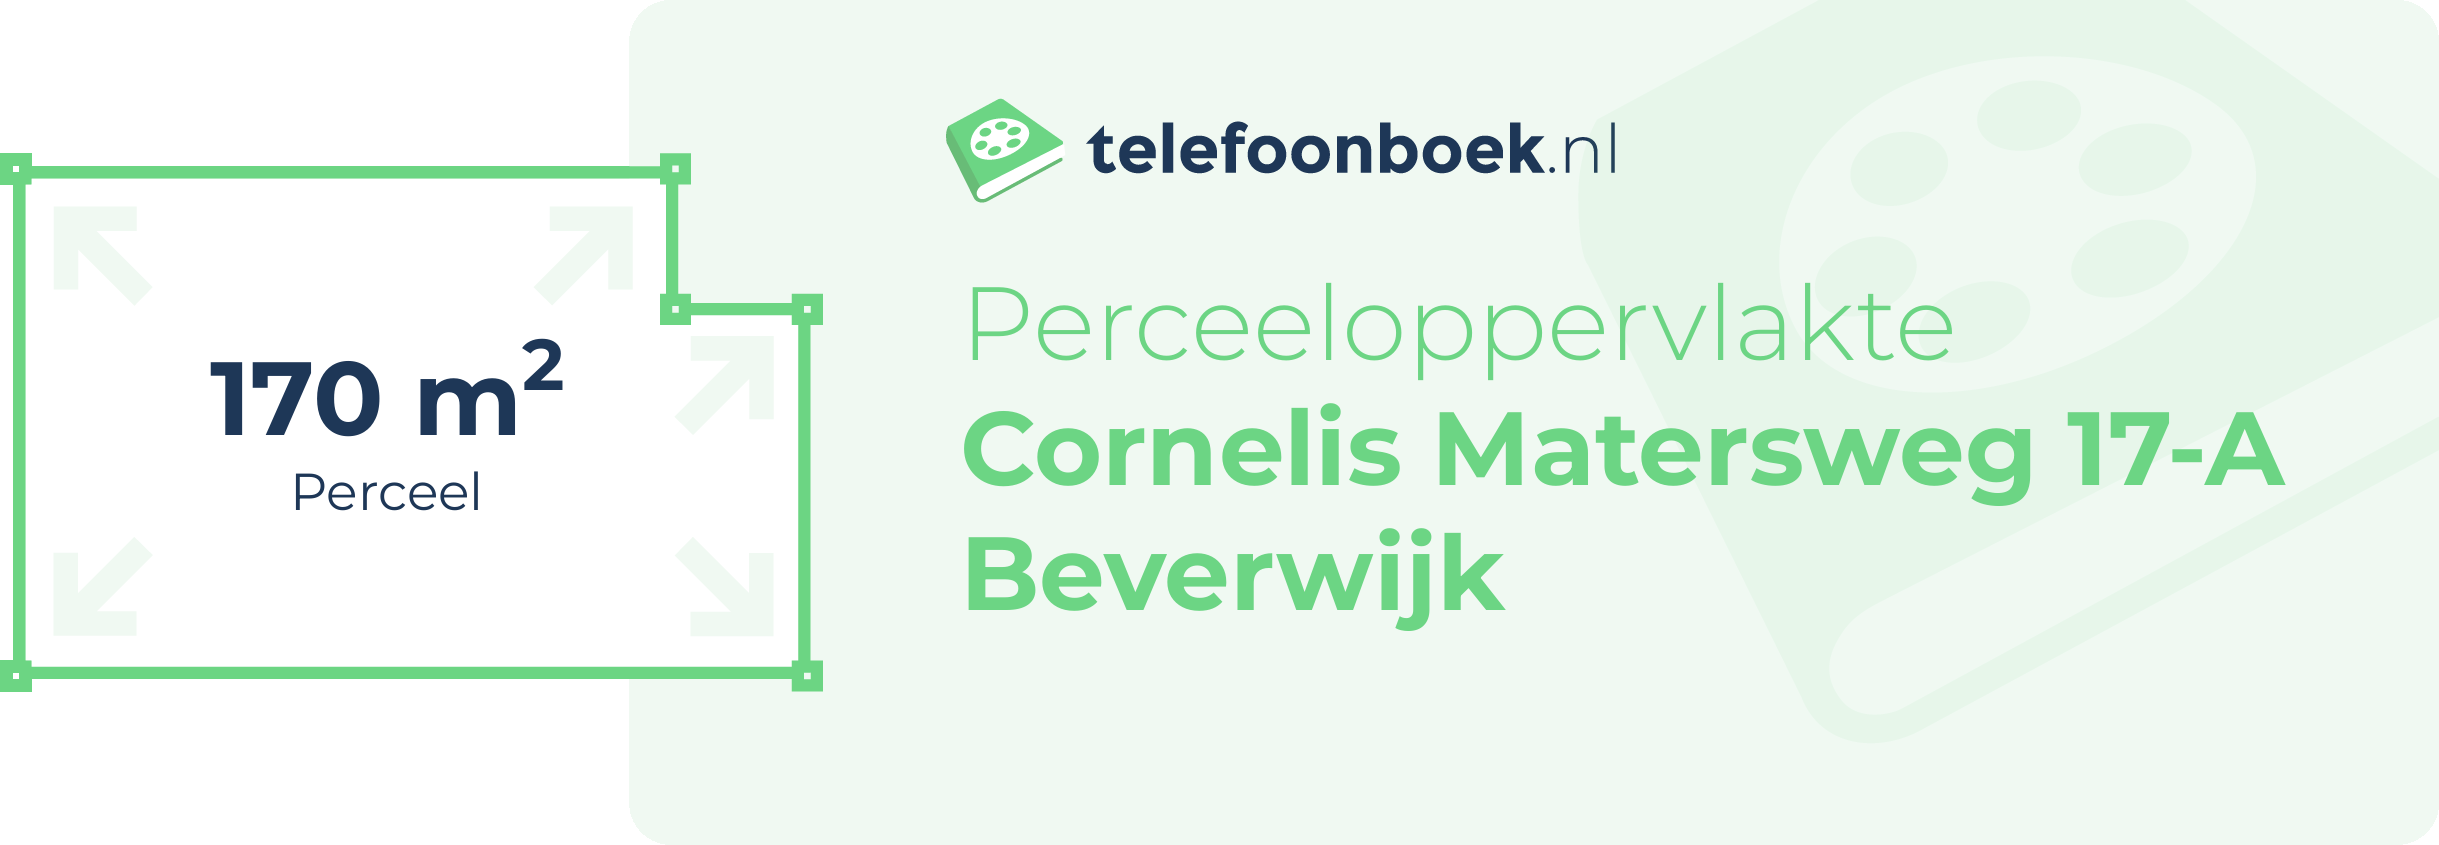 Perceeloppervlakte Cornelis Matersweg 17-A Beverwijk